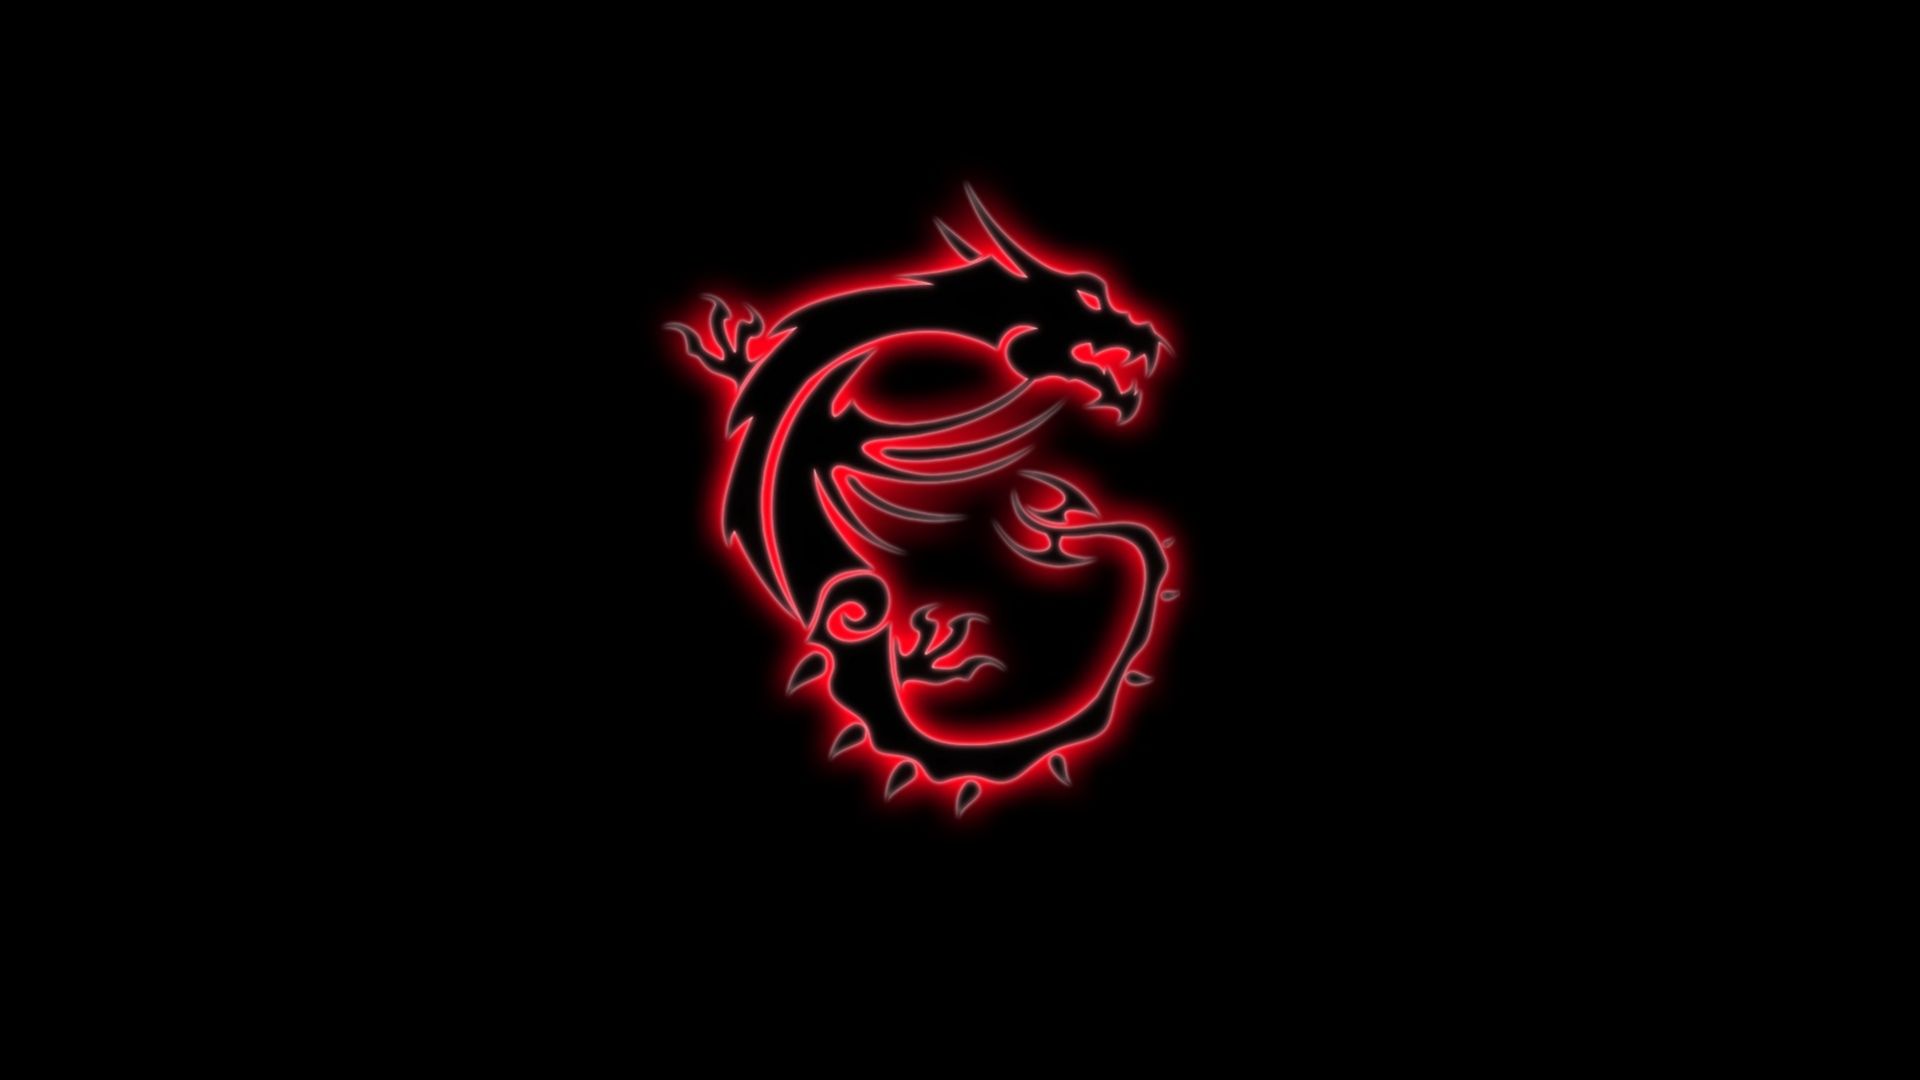 Free download gaming dragon red game red dragon wallpaper hi tech